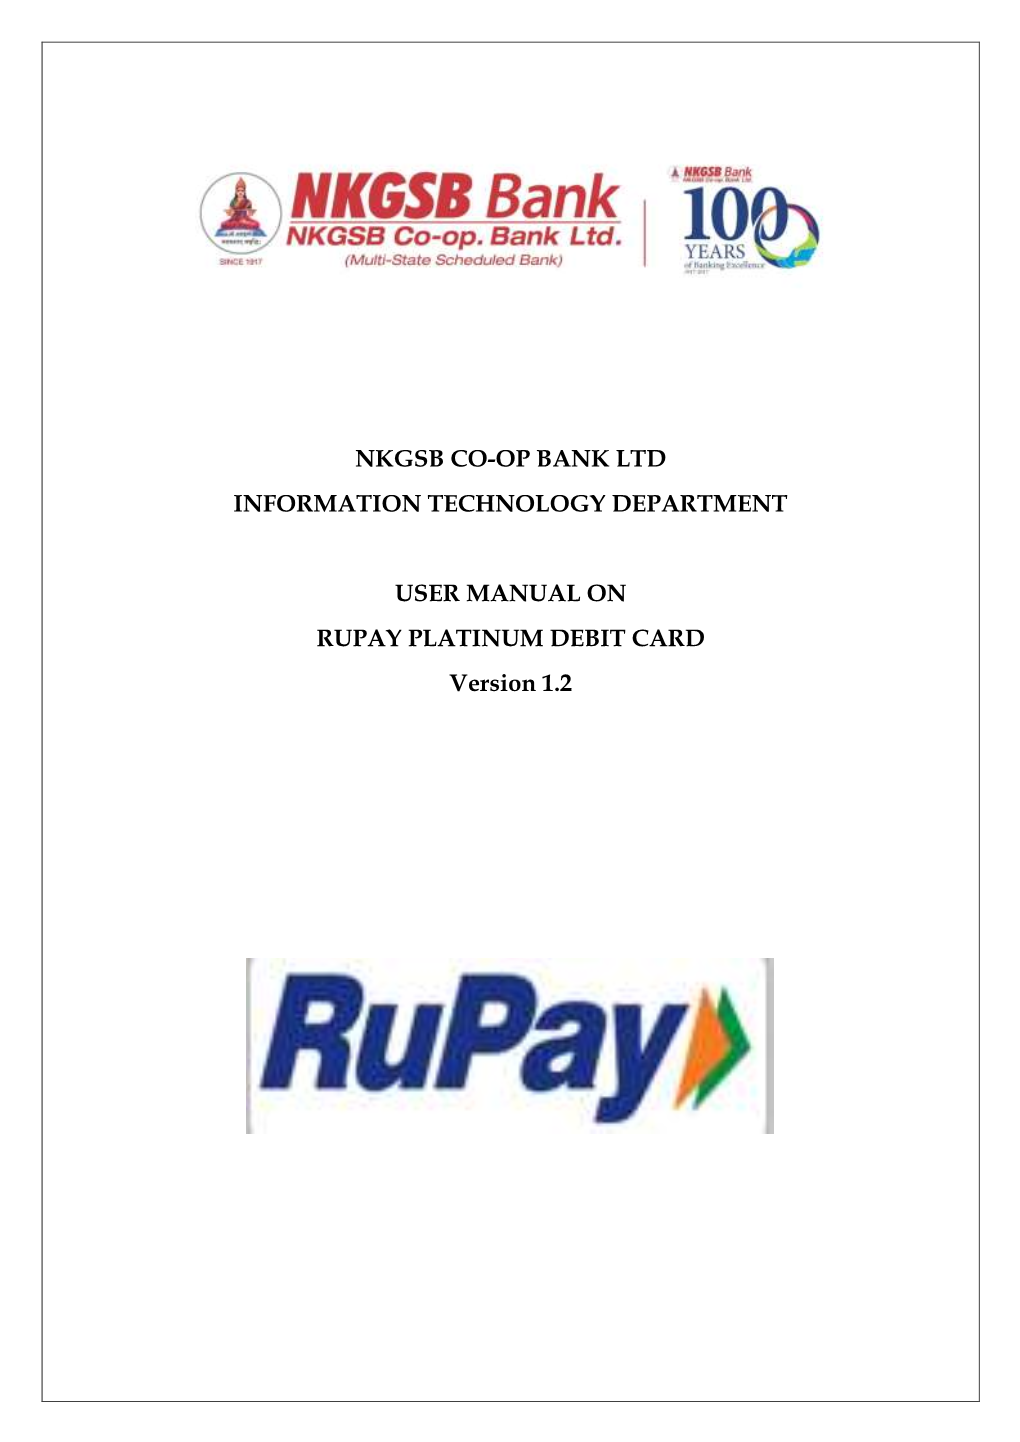 NKGSB Bank Rupay Debit Card User Manual